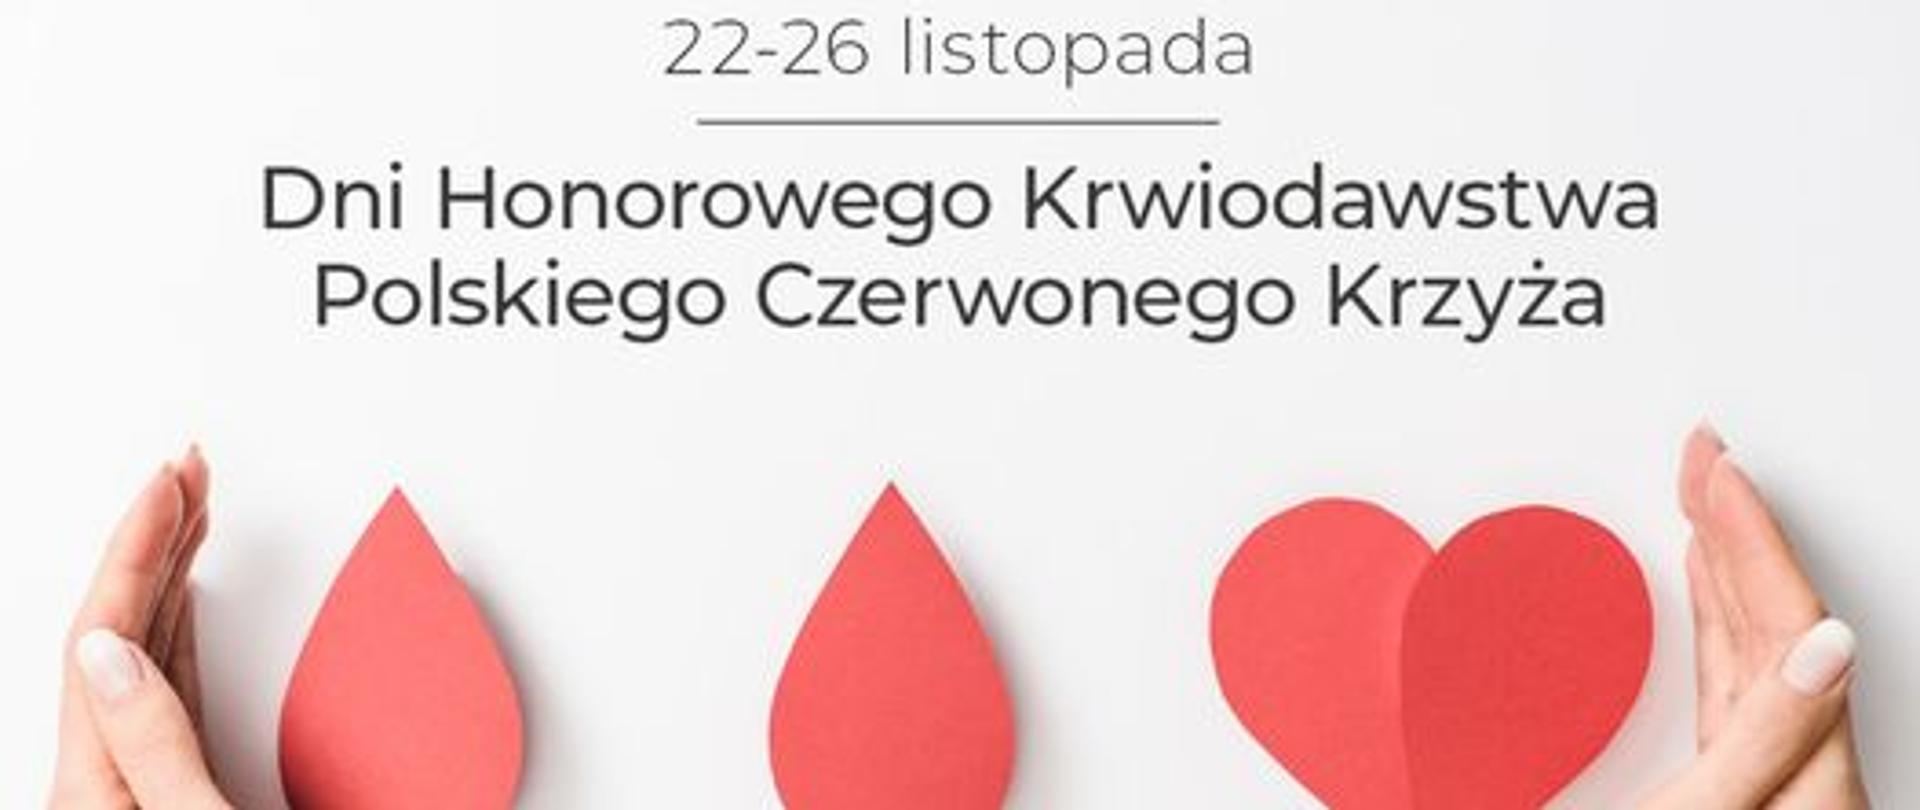 22-26 listopada Dni Honorowego Krwiodawstwa Polskiego Czerwonego Krzyża